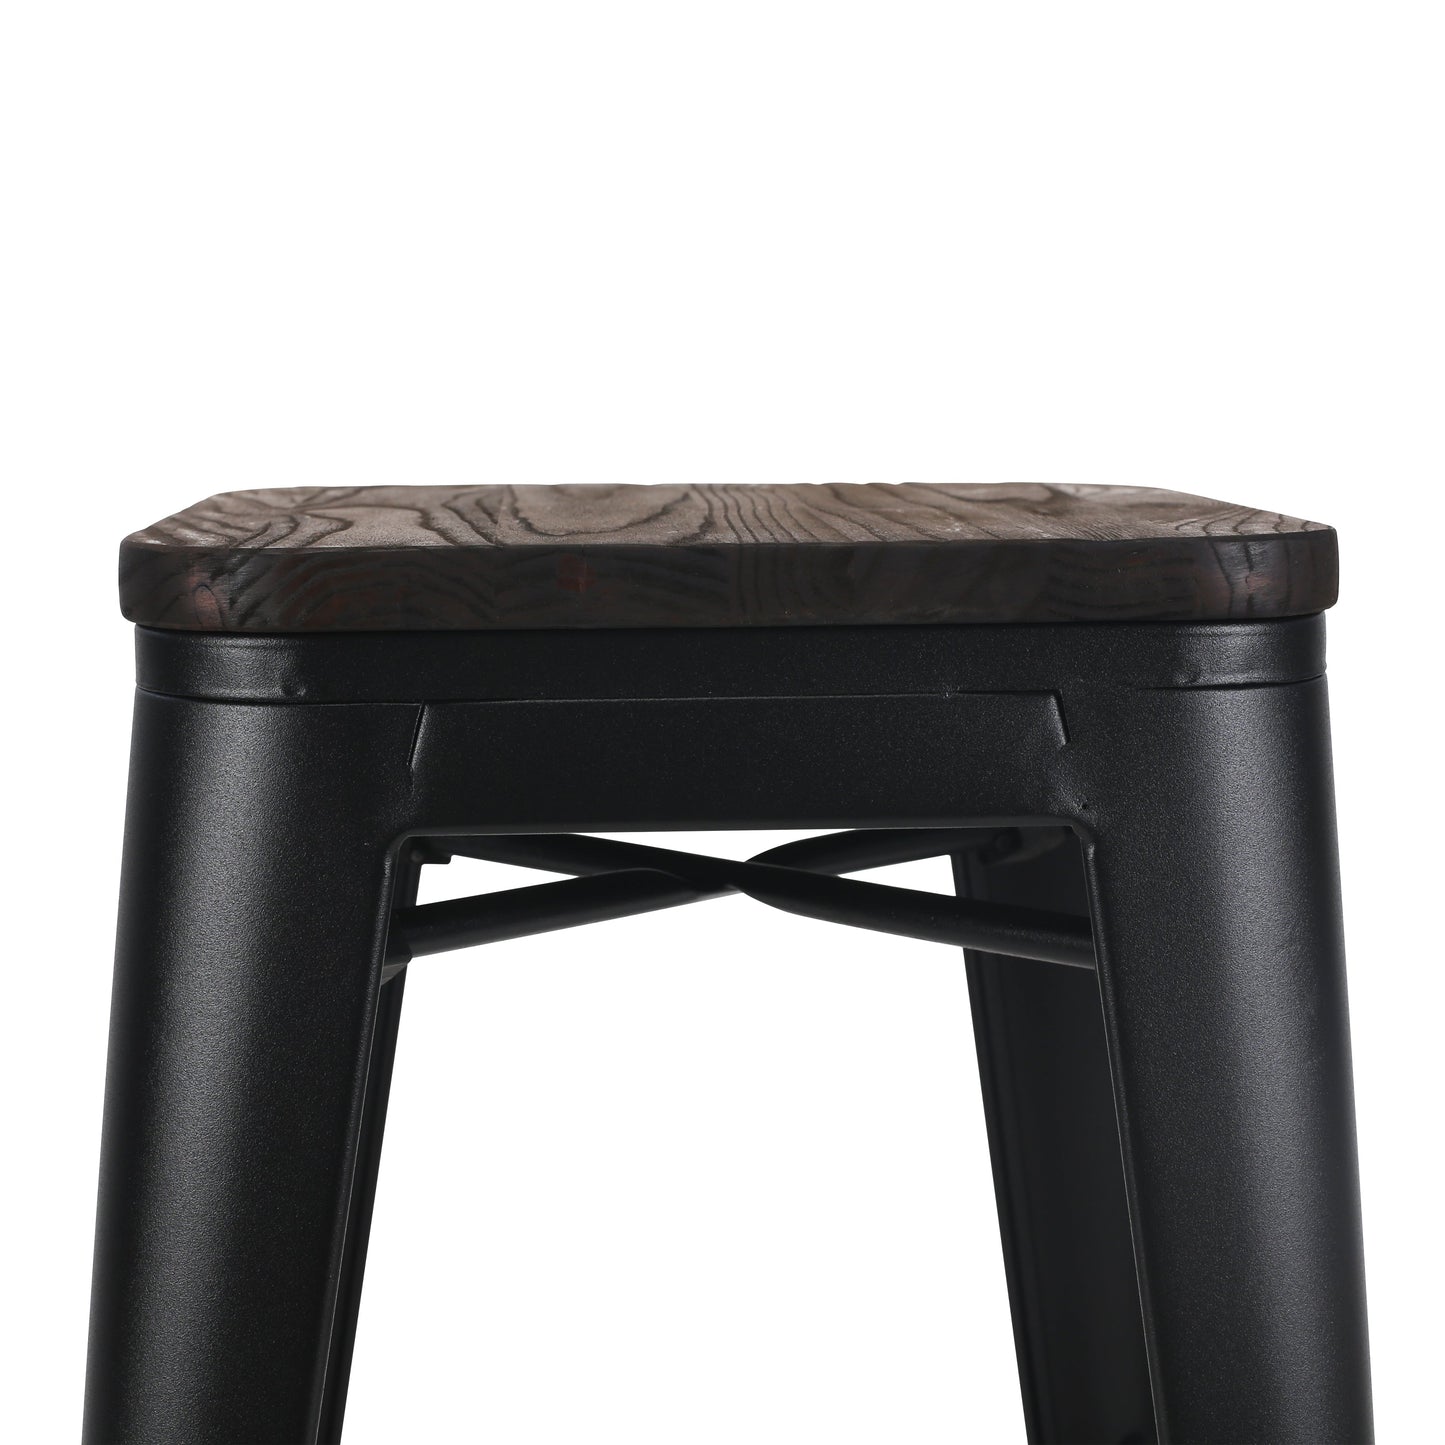 Lot de 4 tabourets de bar en métal noir mat style industriel et assise en bois foncé - Hauteur 76 cm